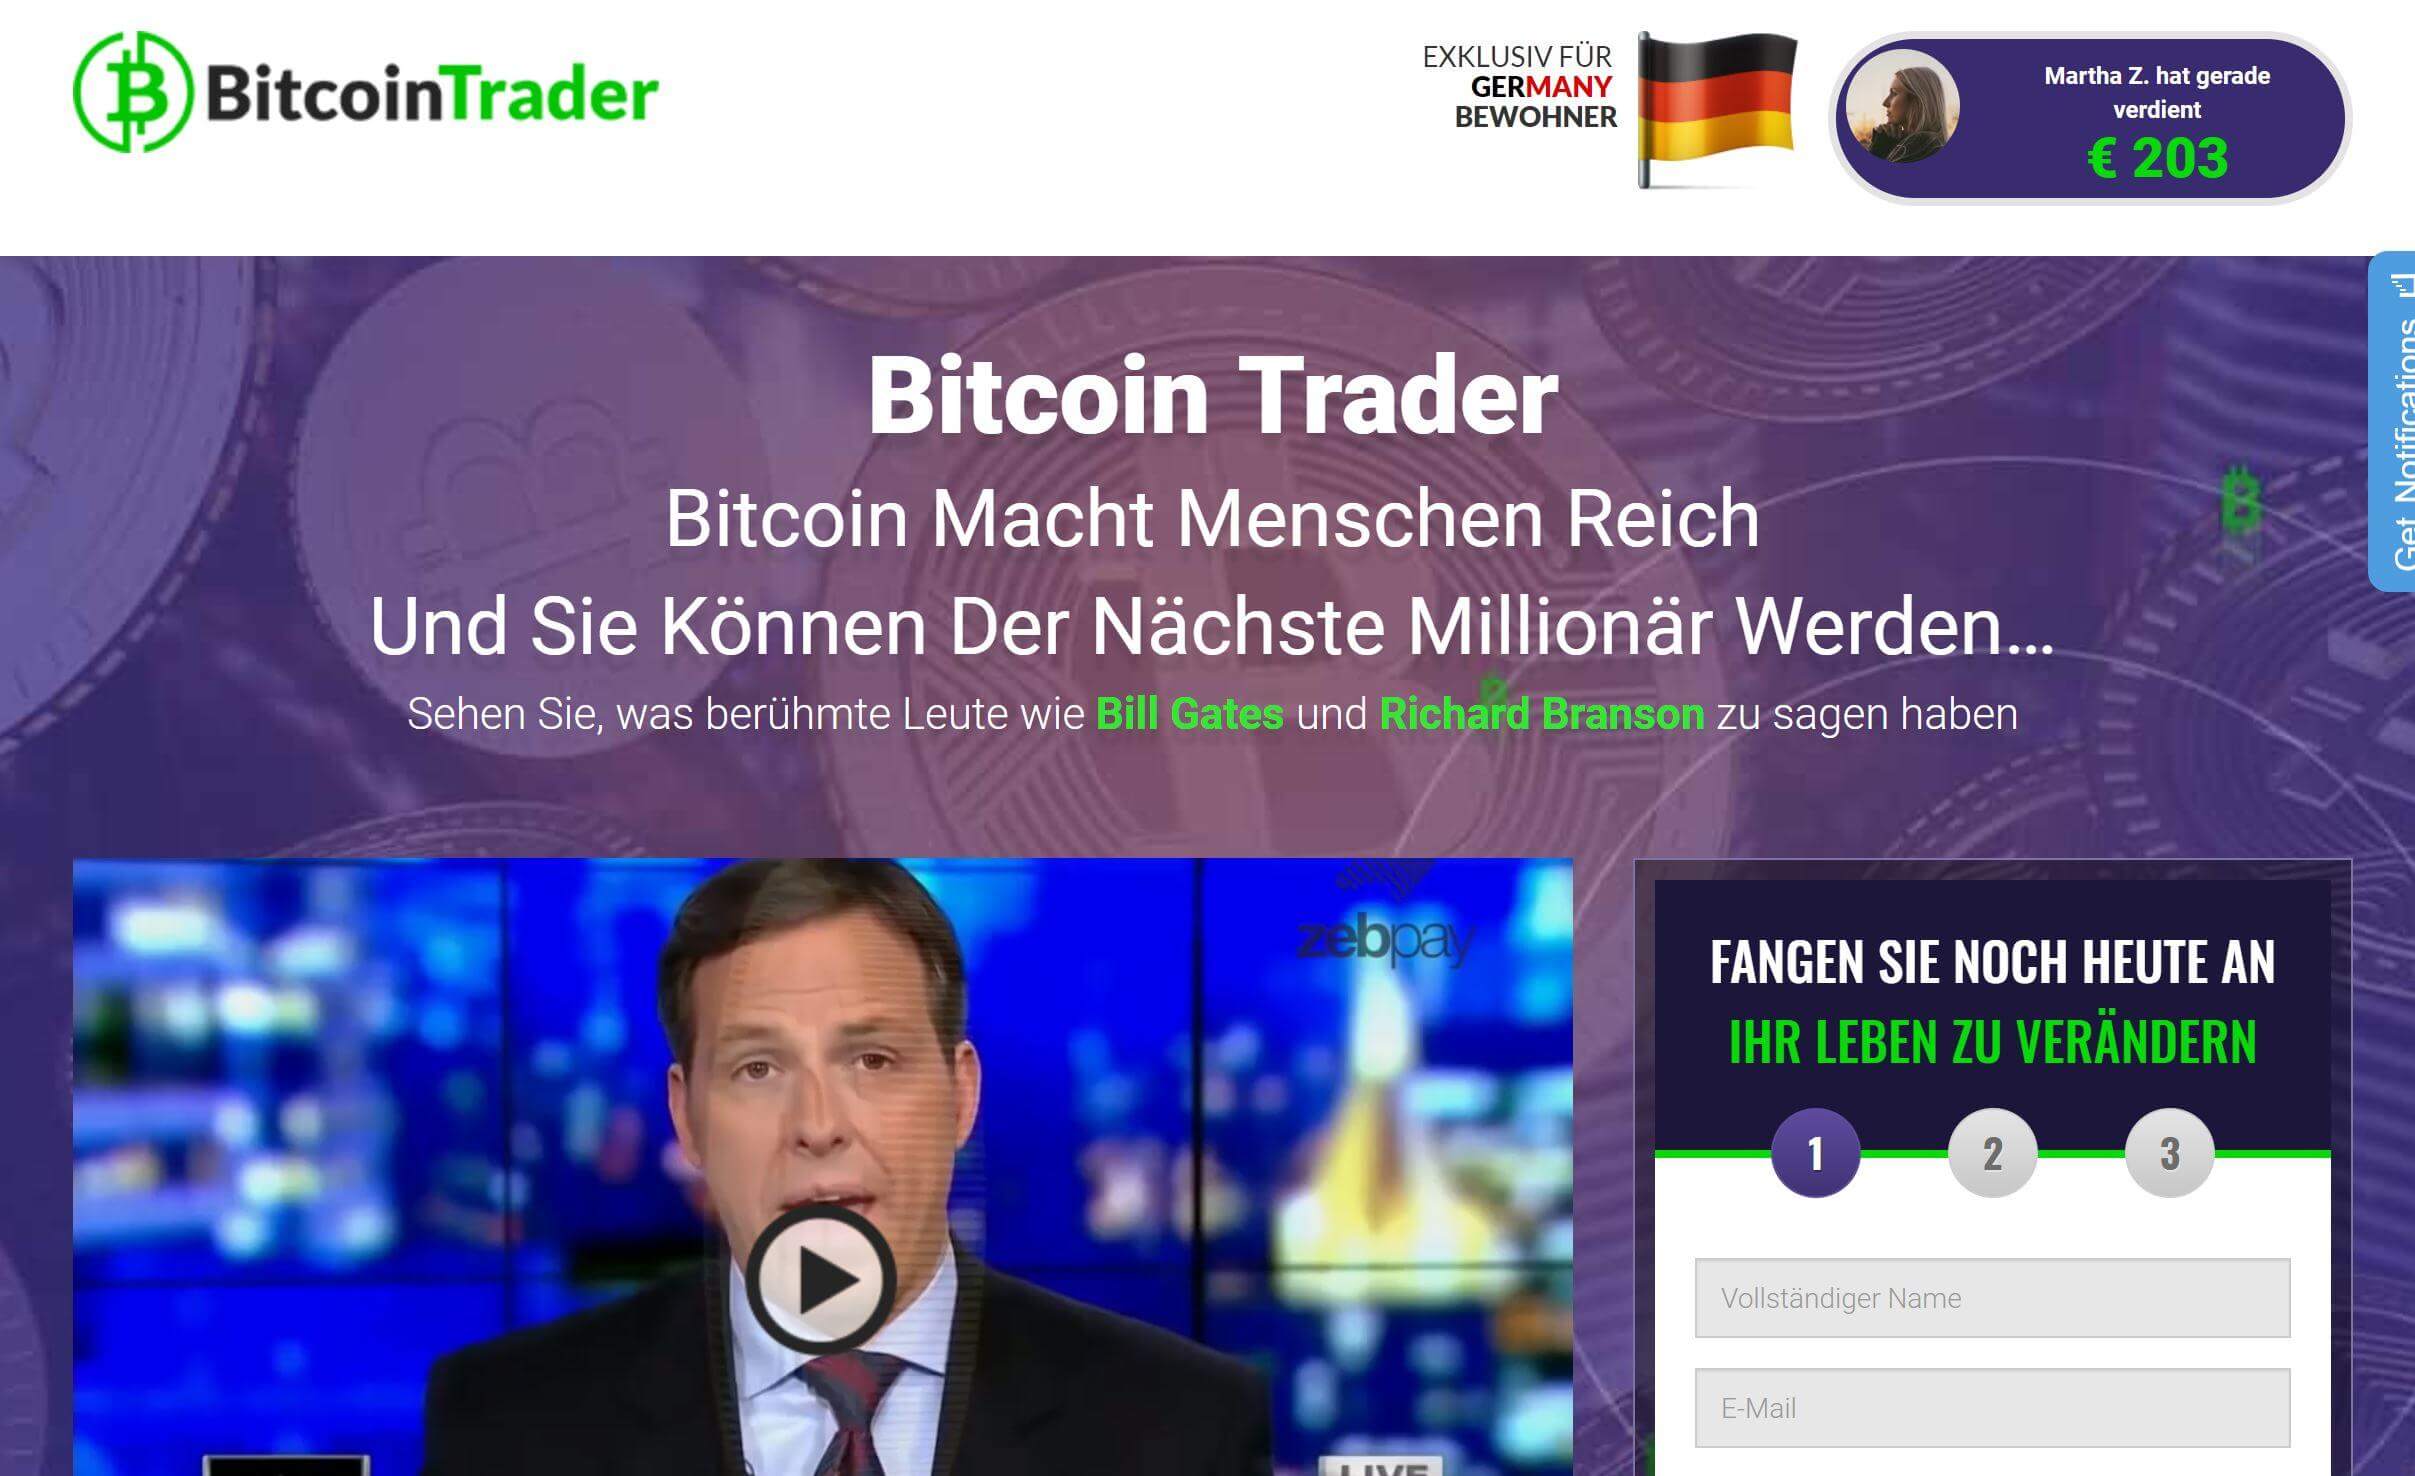 Bitcoin Trader Betrug